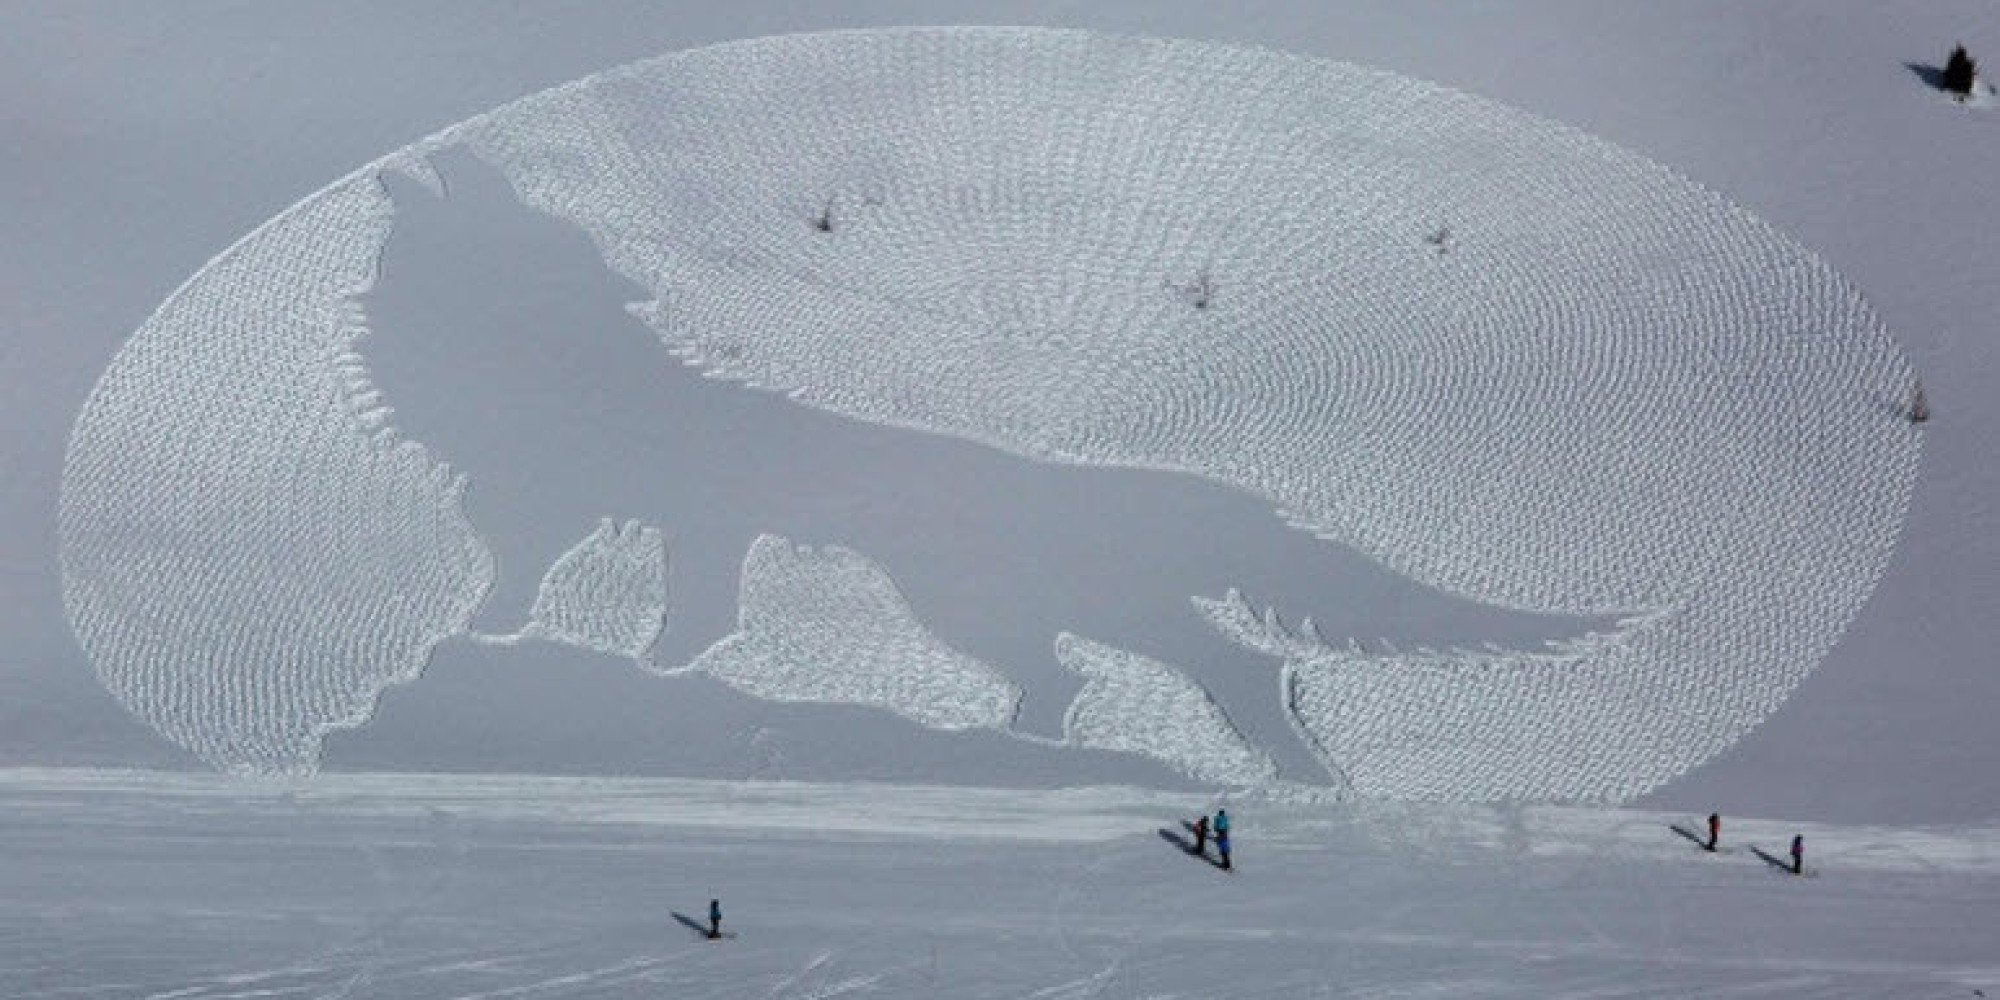 加拿大的雪地畫。圖取自Huffingtonpost。.jpg